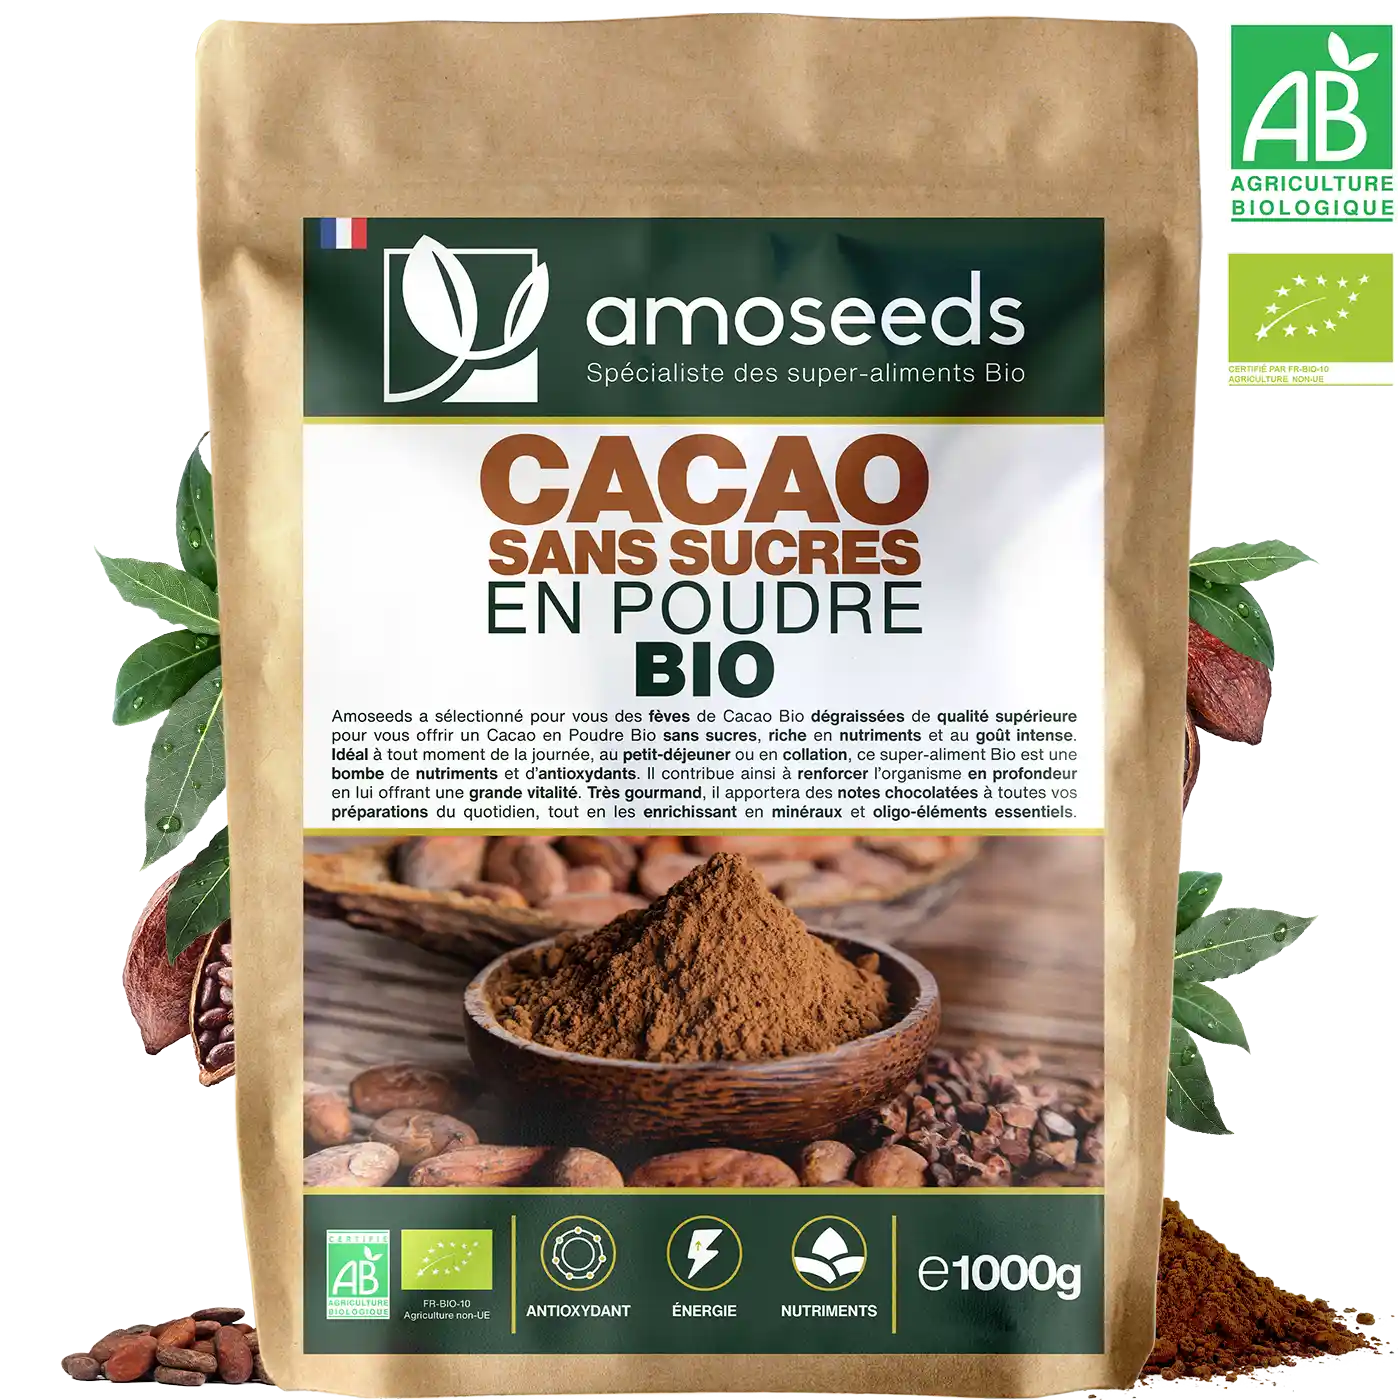 Cacao poudre sans sucres bio amoseeds specialiste des super aliments bio